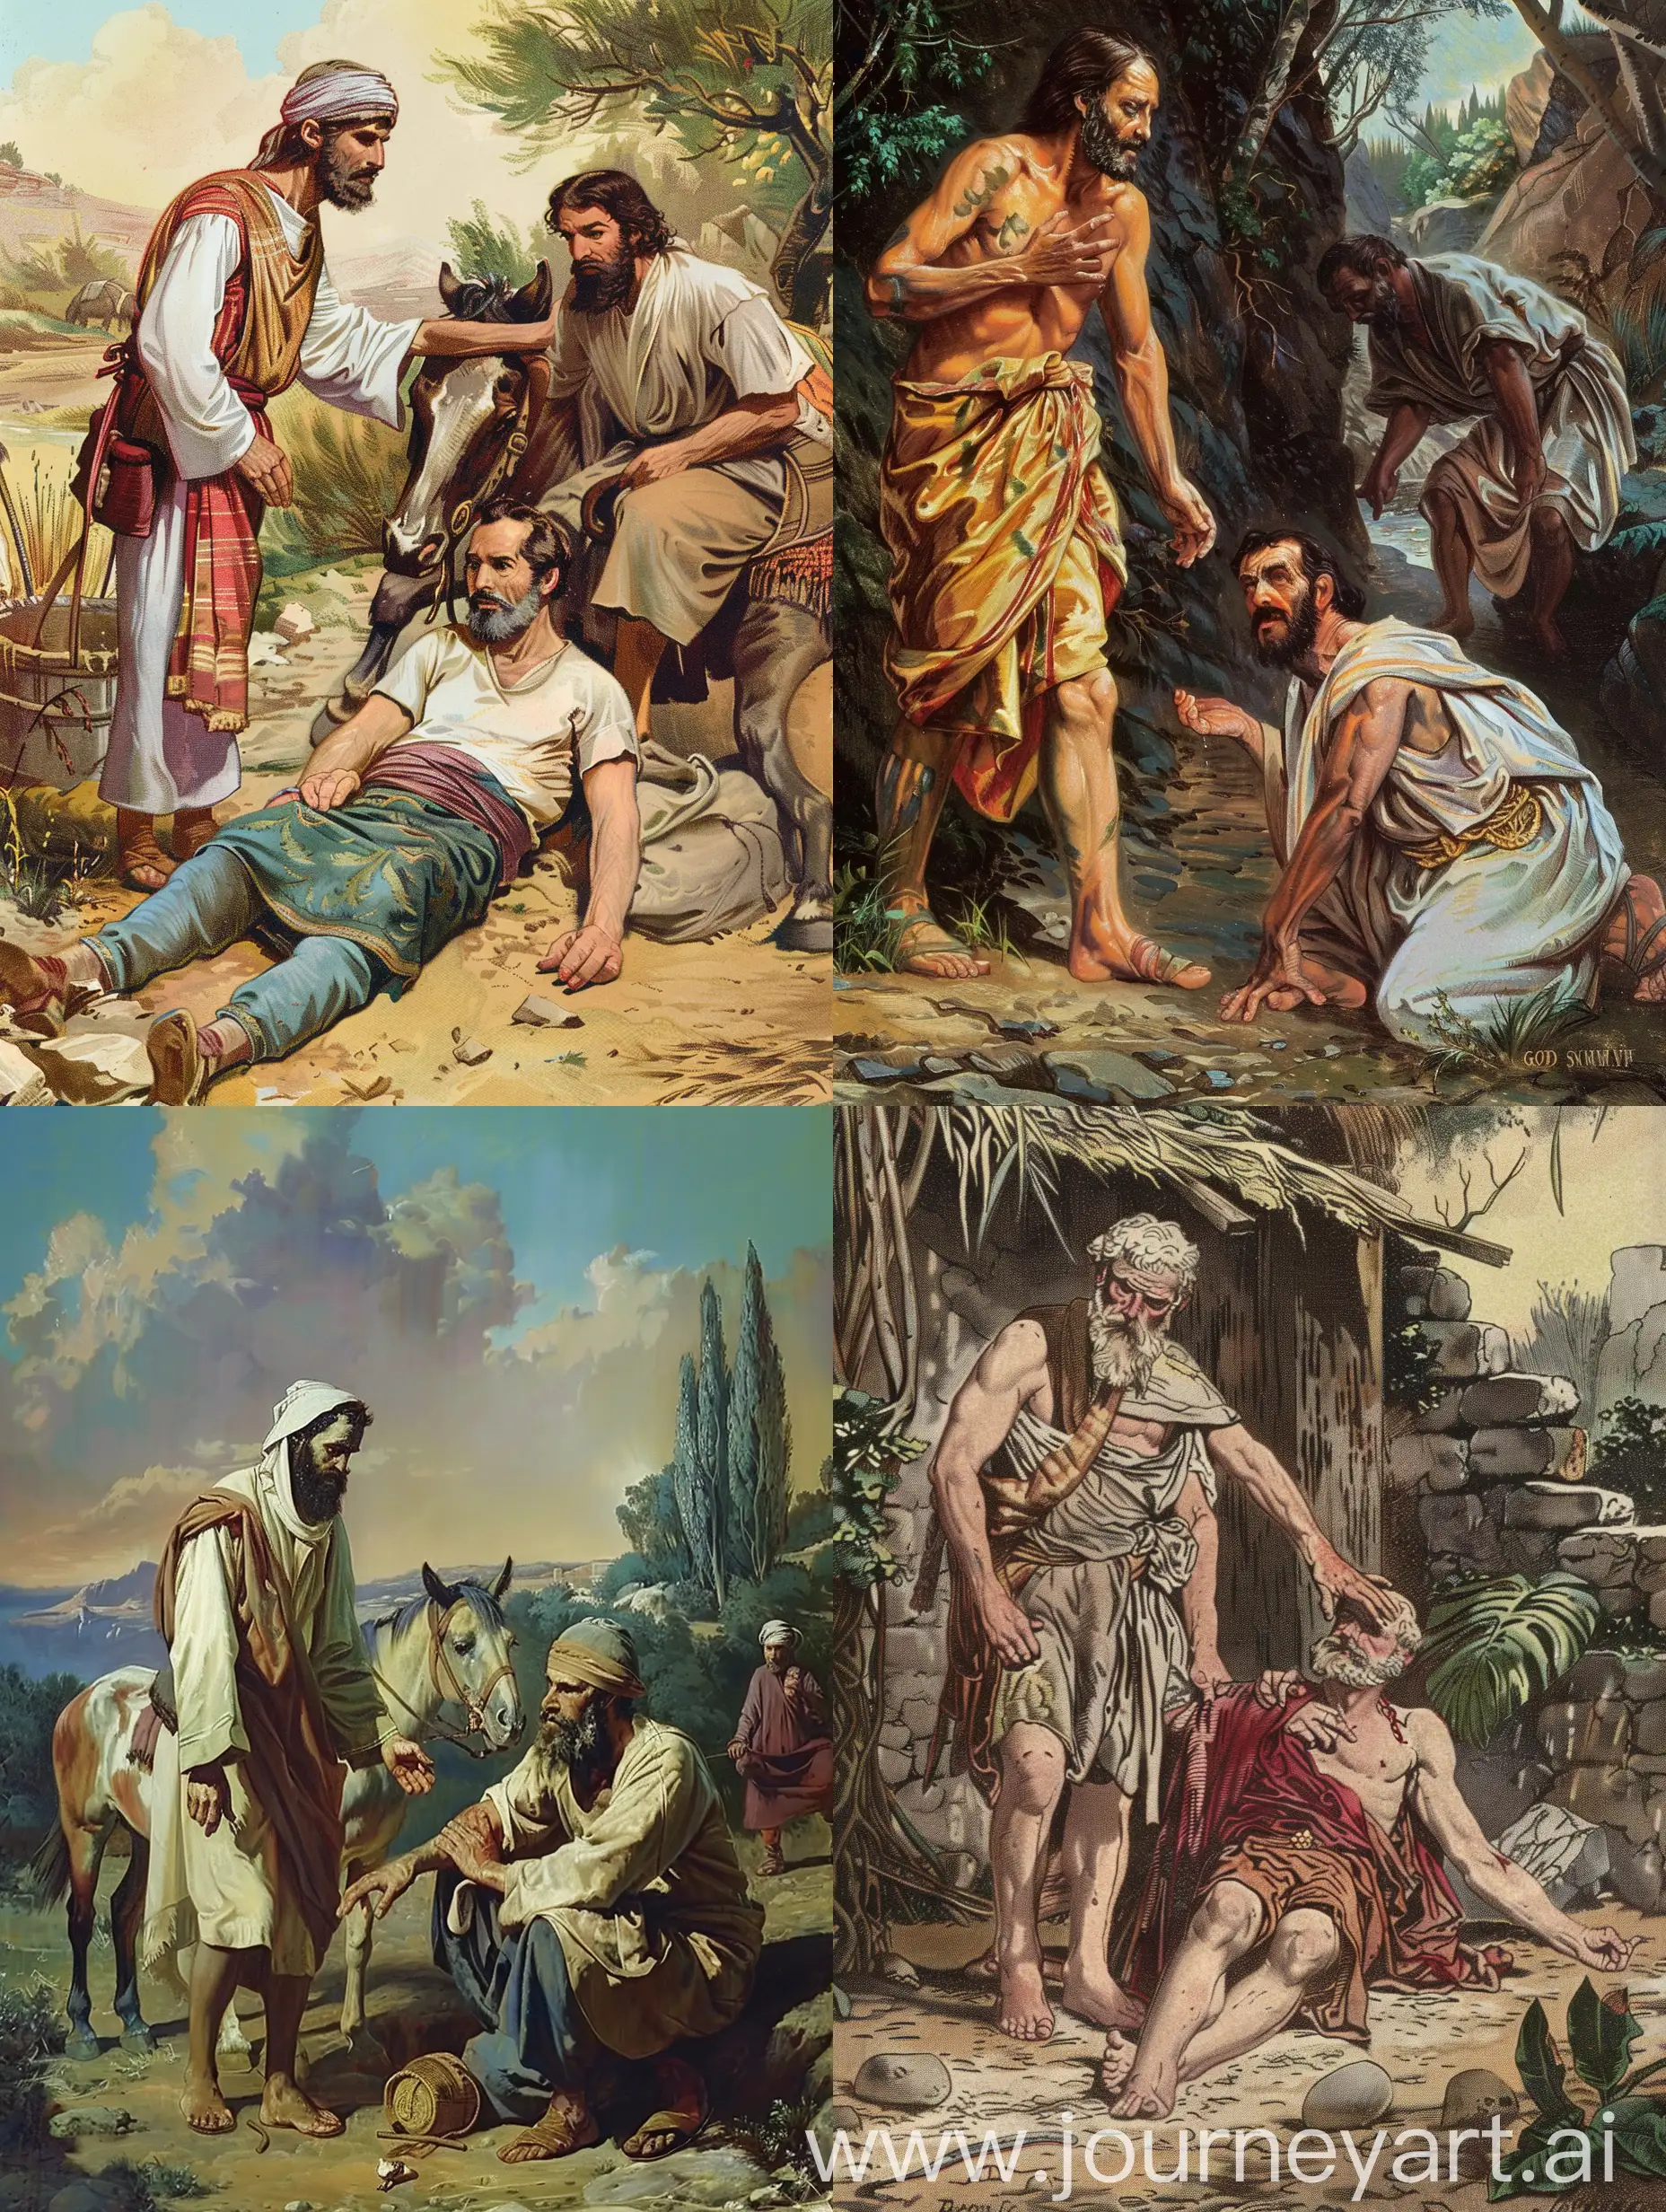 Imagen visual de la parábola del buen samaritano, de la biblia